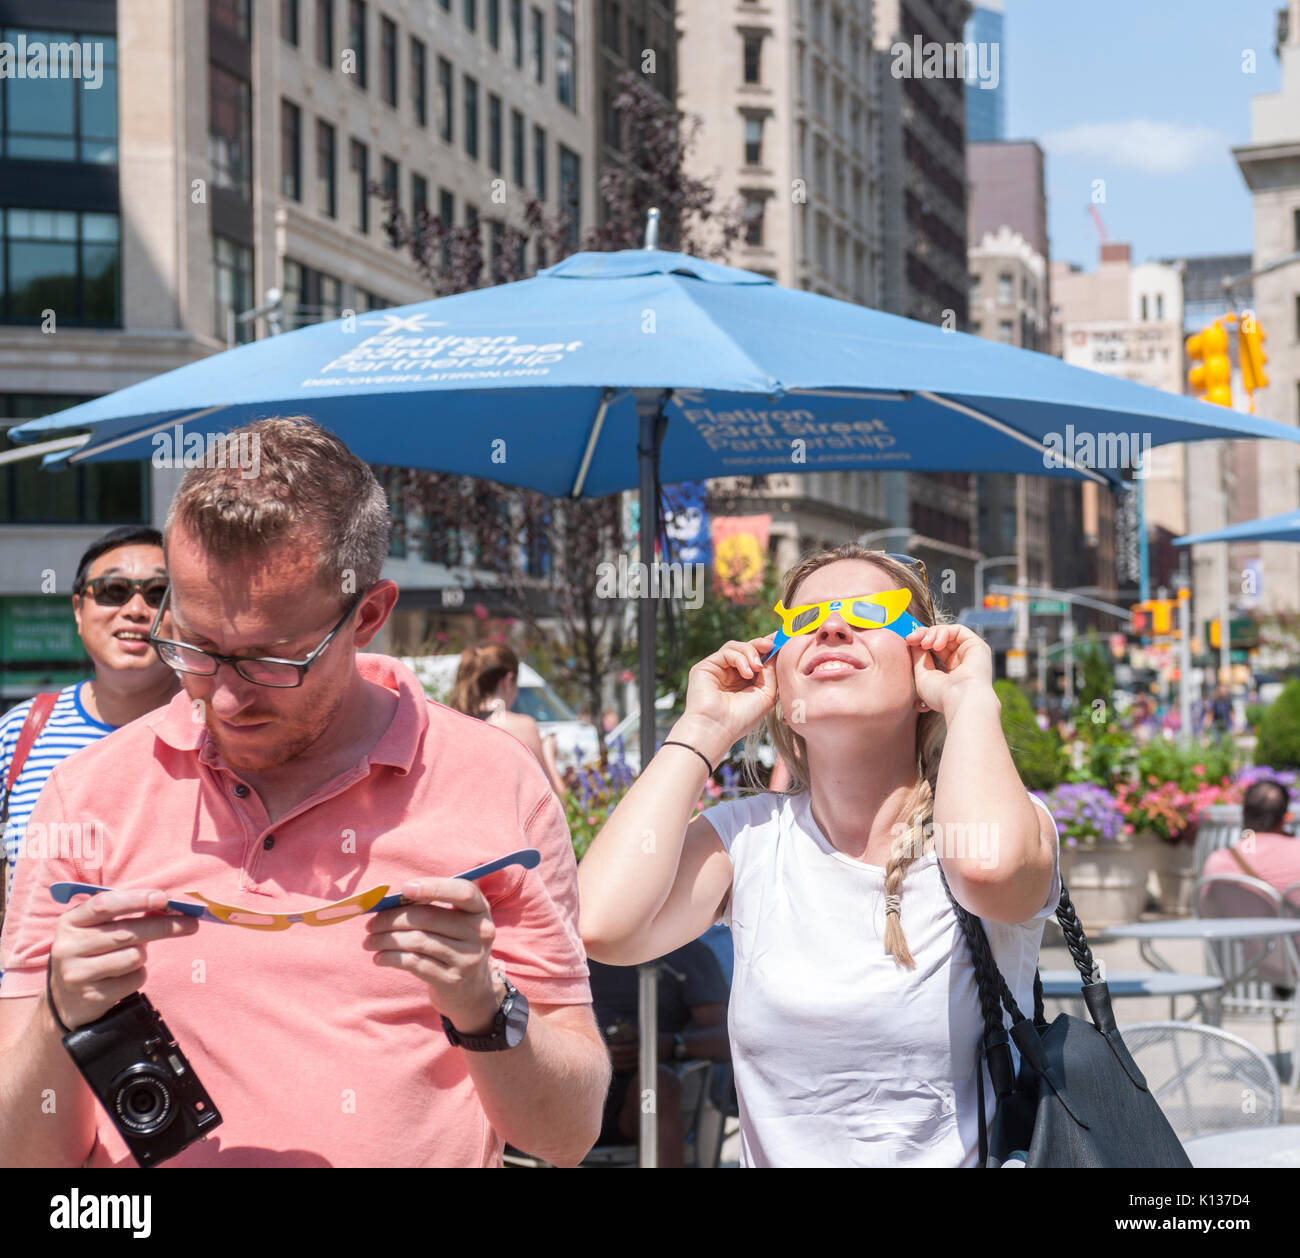 Une banane gonflable géant se trouve dans Flatiron Plaza à New York, le dimanche 20 août 2017 dans le cadre de la 'Chiquita Banana Sun' événement de marque. Chiquita a réclamé l'argent en forme de banane du soleil causés par l'éclipse et renommée la 'Banana Sun', en prétendant qu'ils sont responsables de l'eclipse. La langue-dans-joue également les événements de marque de lunettes pour regarder eclipse passant. (© Richard B. Levine) Banque D'Images